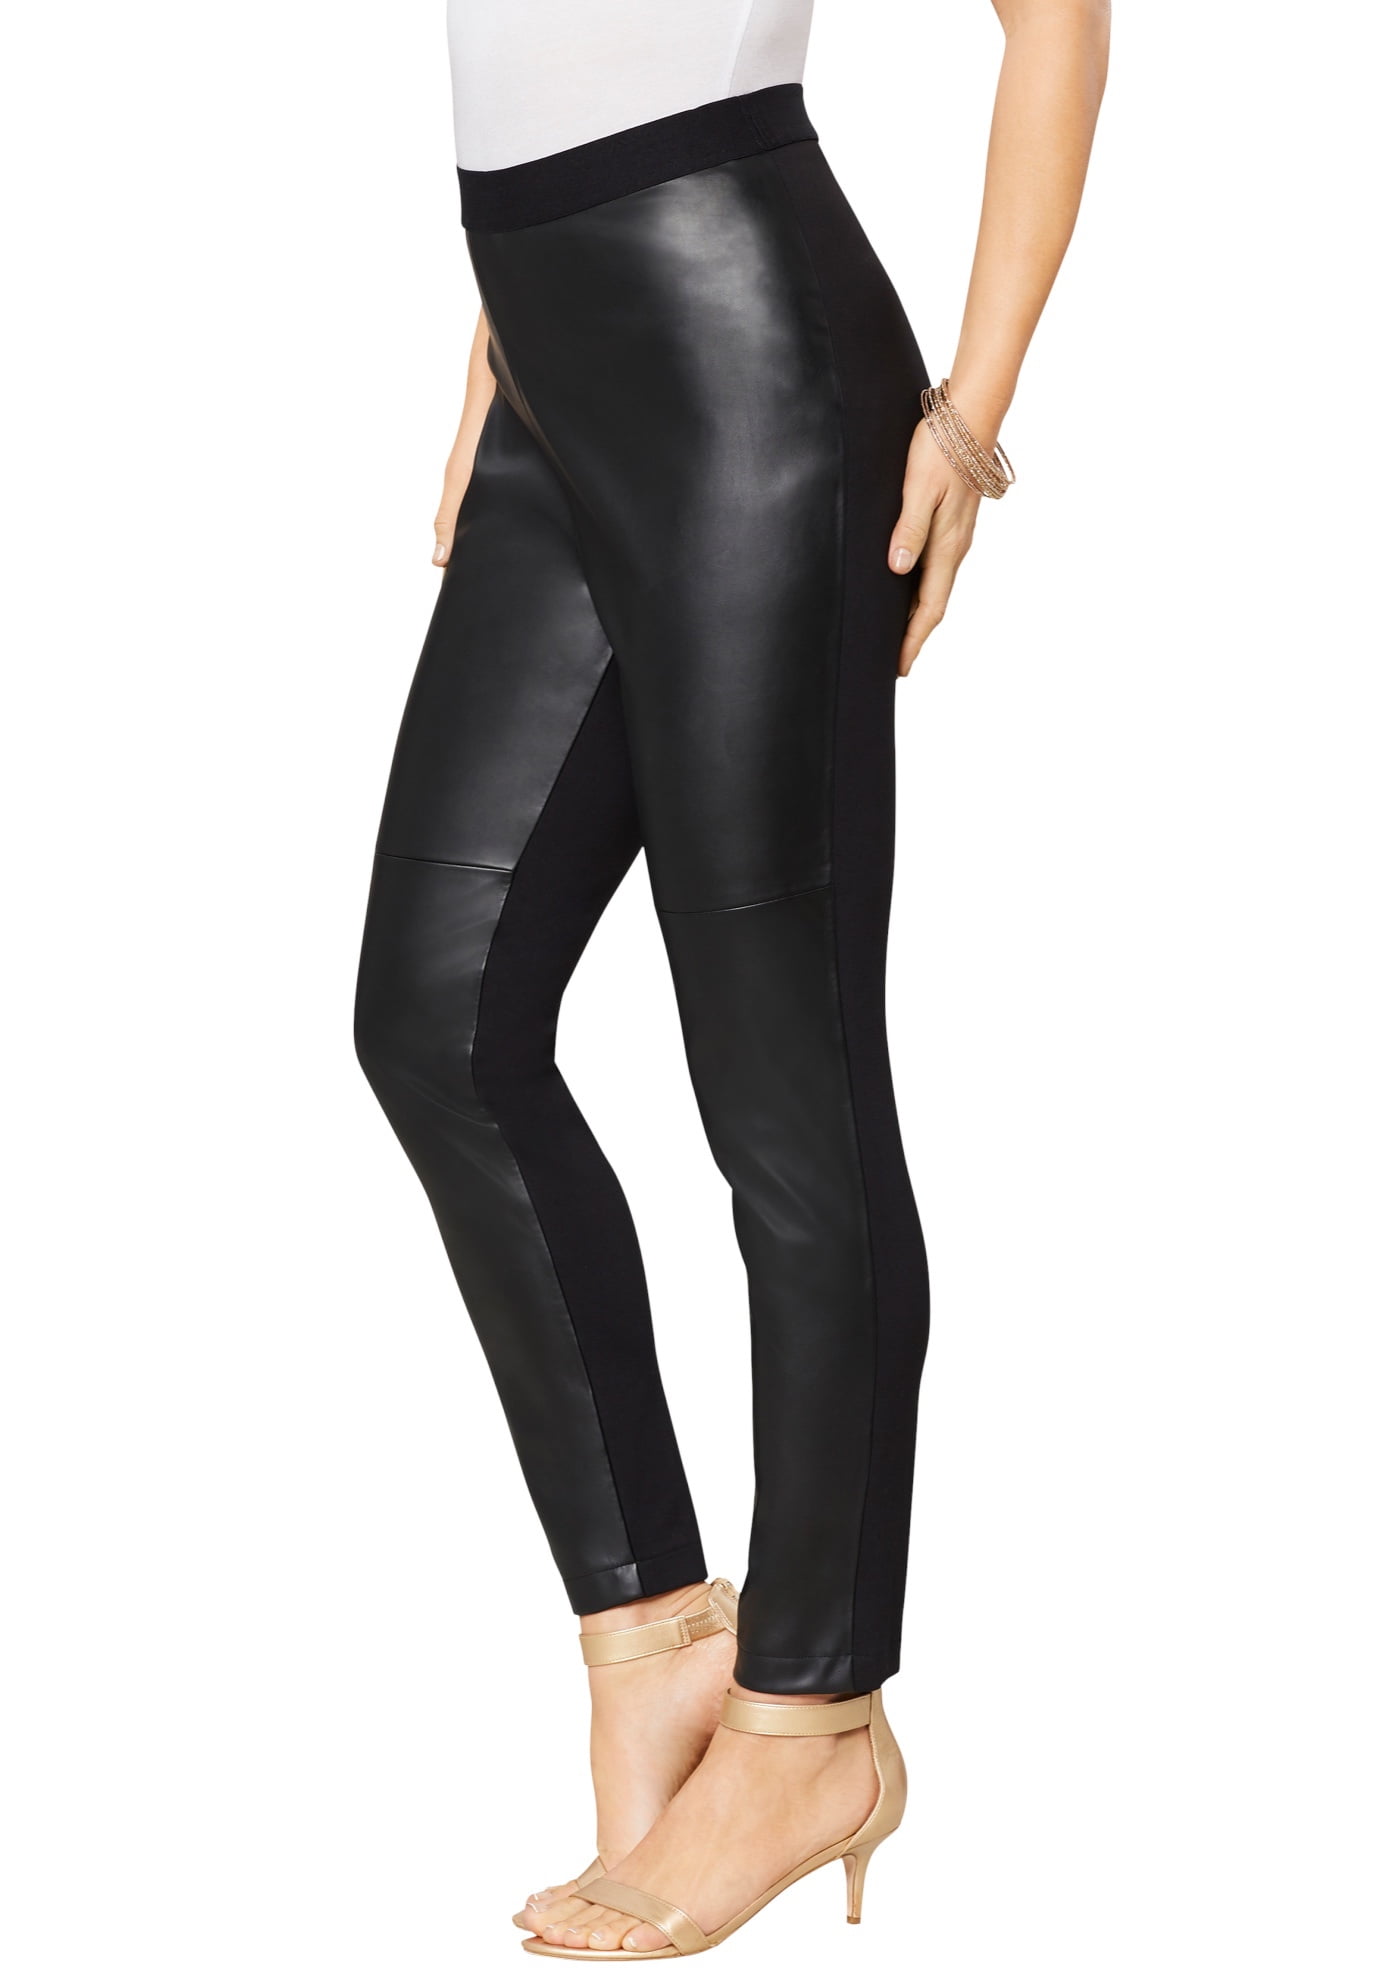 Roamans Womens Plus Size Faux Leather Legging Vegan Leather Stretch Pants 8428